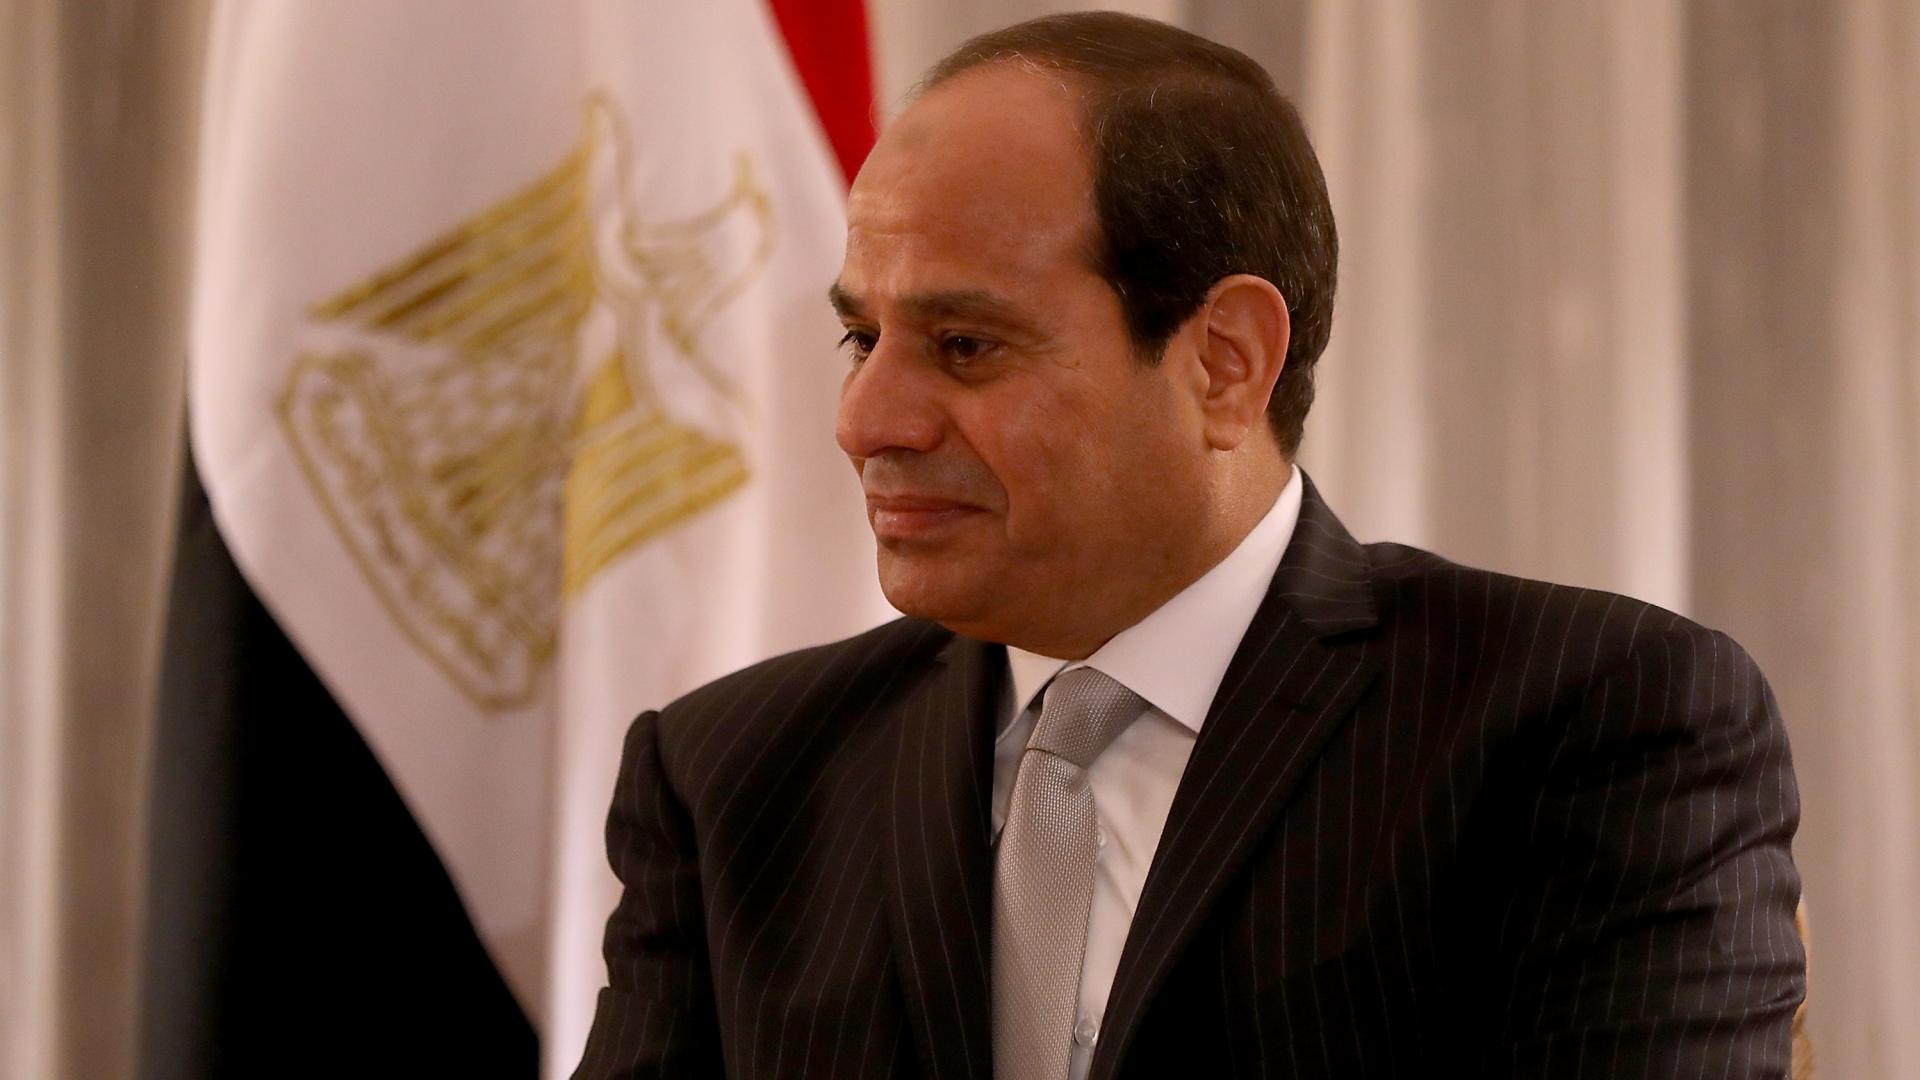 العفو الدولية ردا على تصريحات السيسي لـCBS: مصر تحولت إلى “سجن مفتوح”